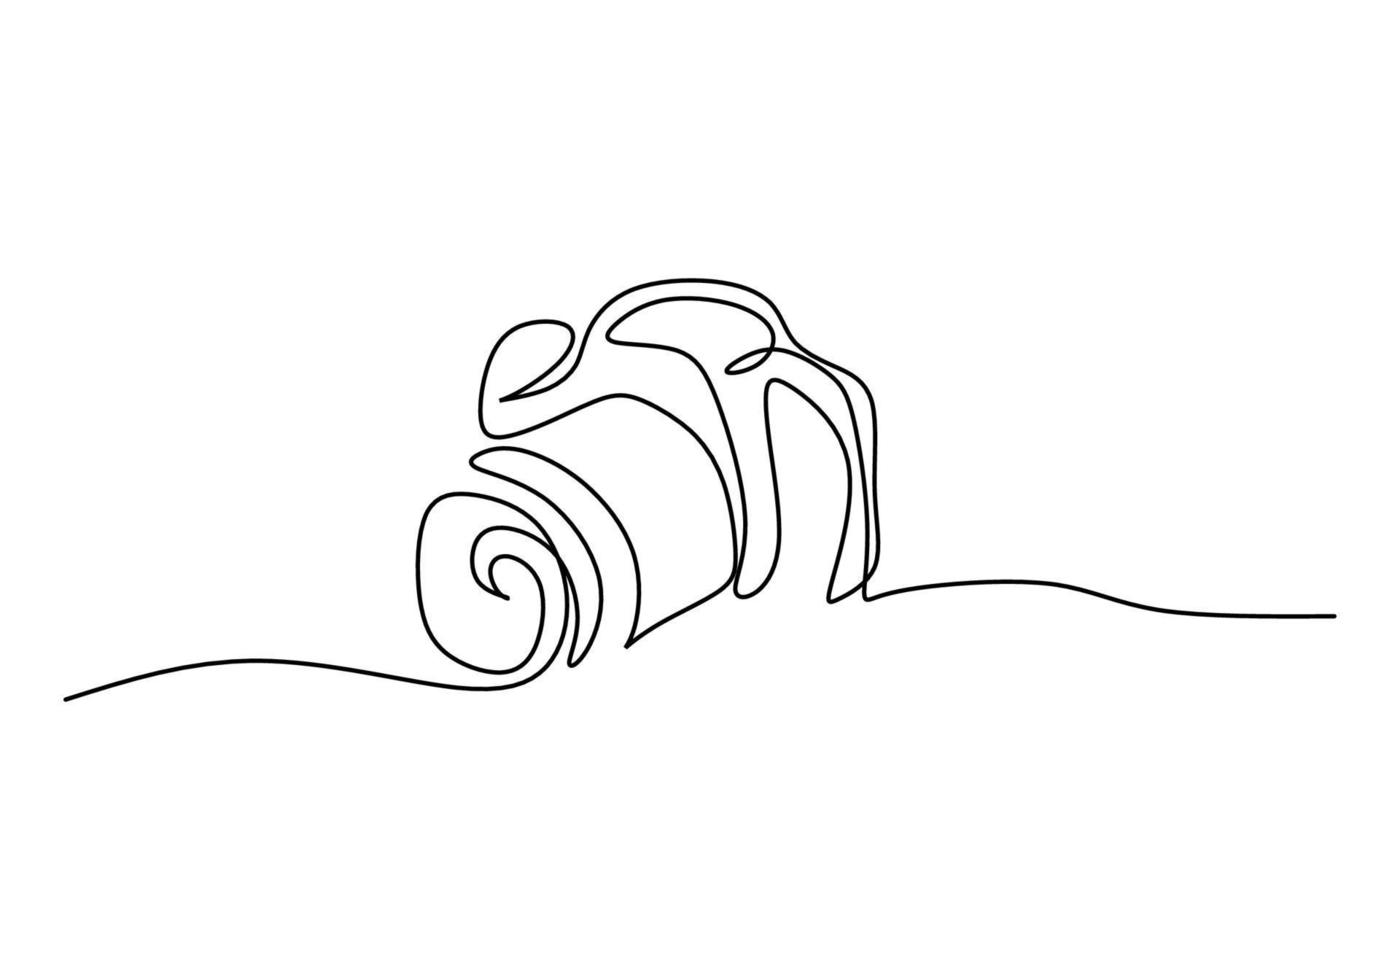 una singola linea continua di fotocamera digitale per il fotografo vettore